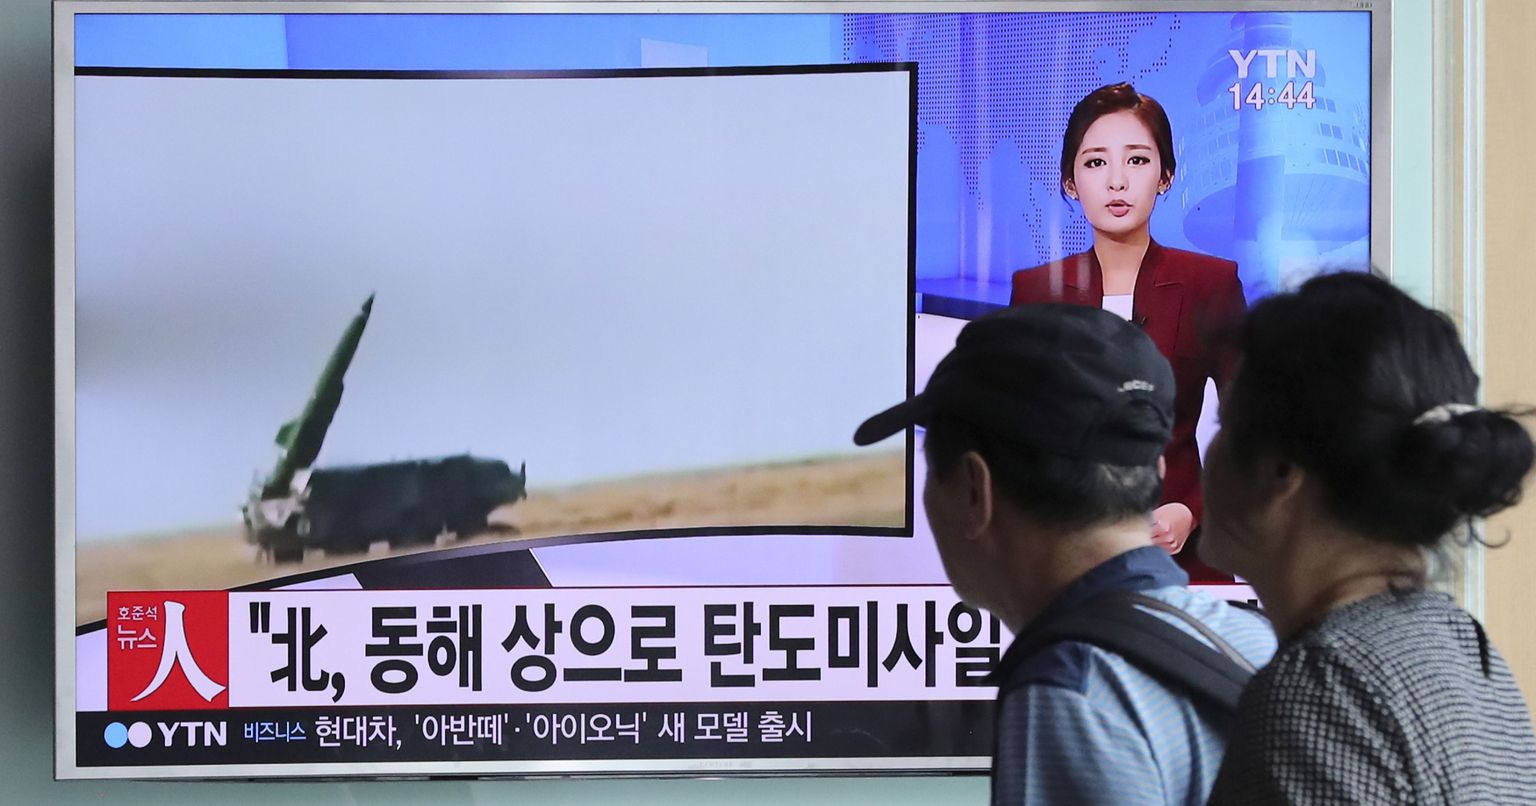 Inimesed vaatamas Souli raudteejaamas uudiseid põhjanaabri raketikatsetusest.